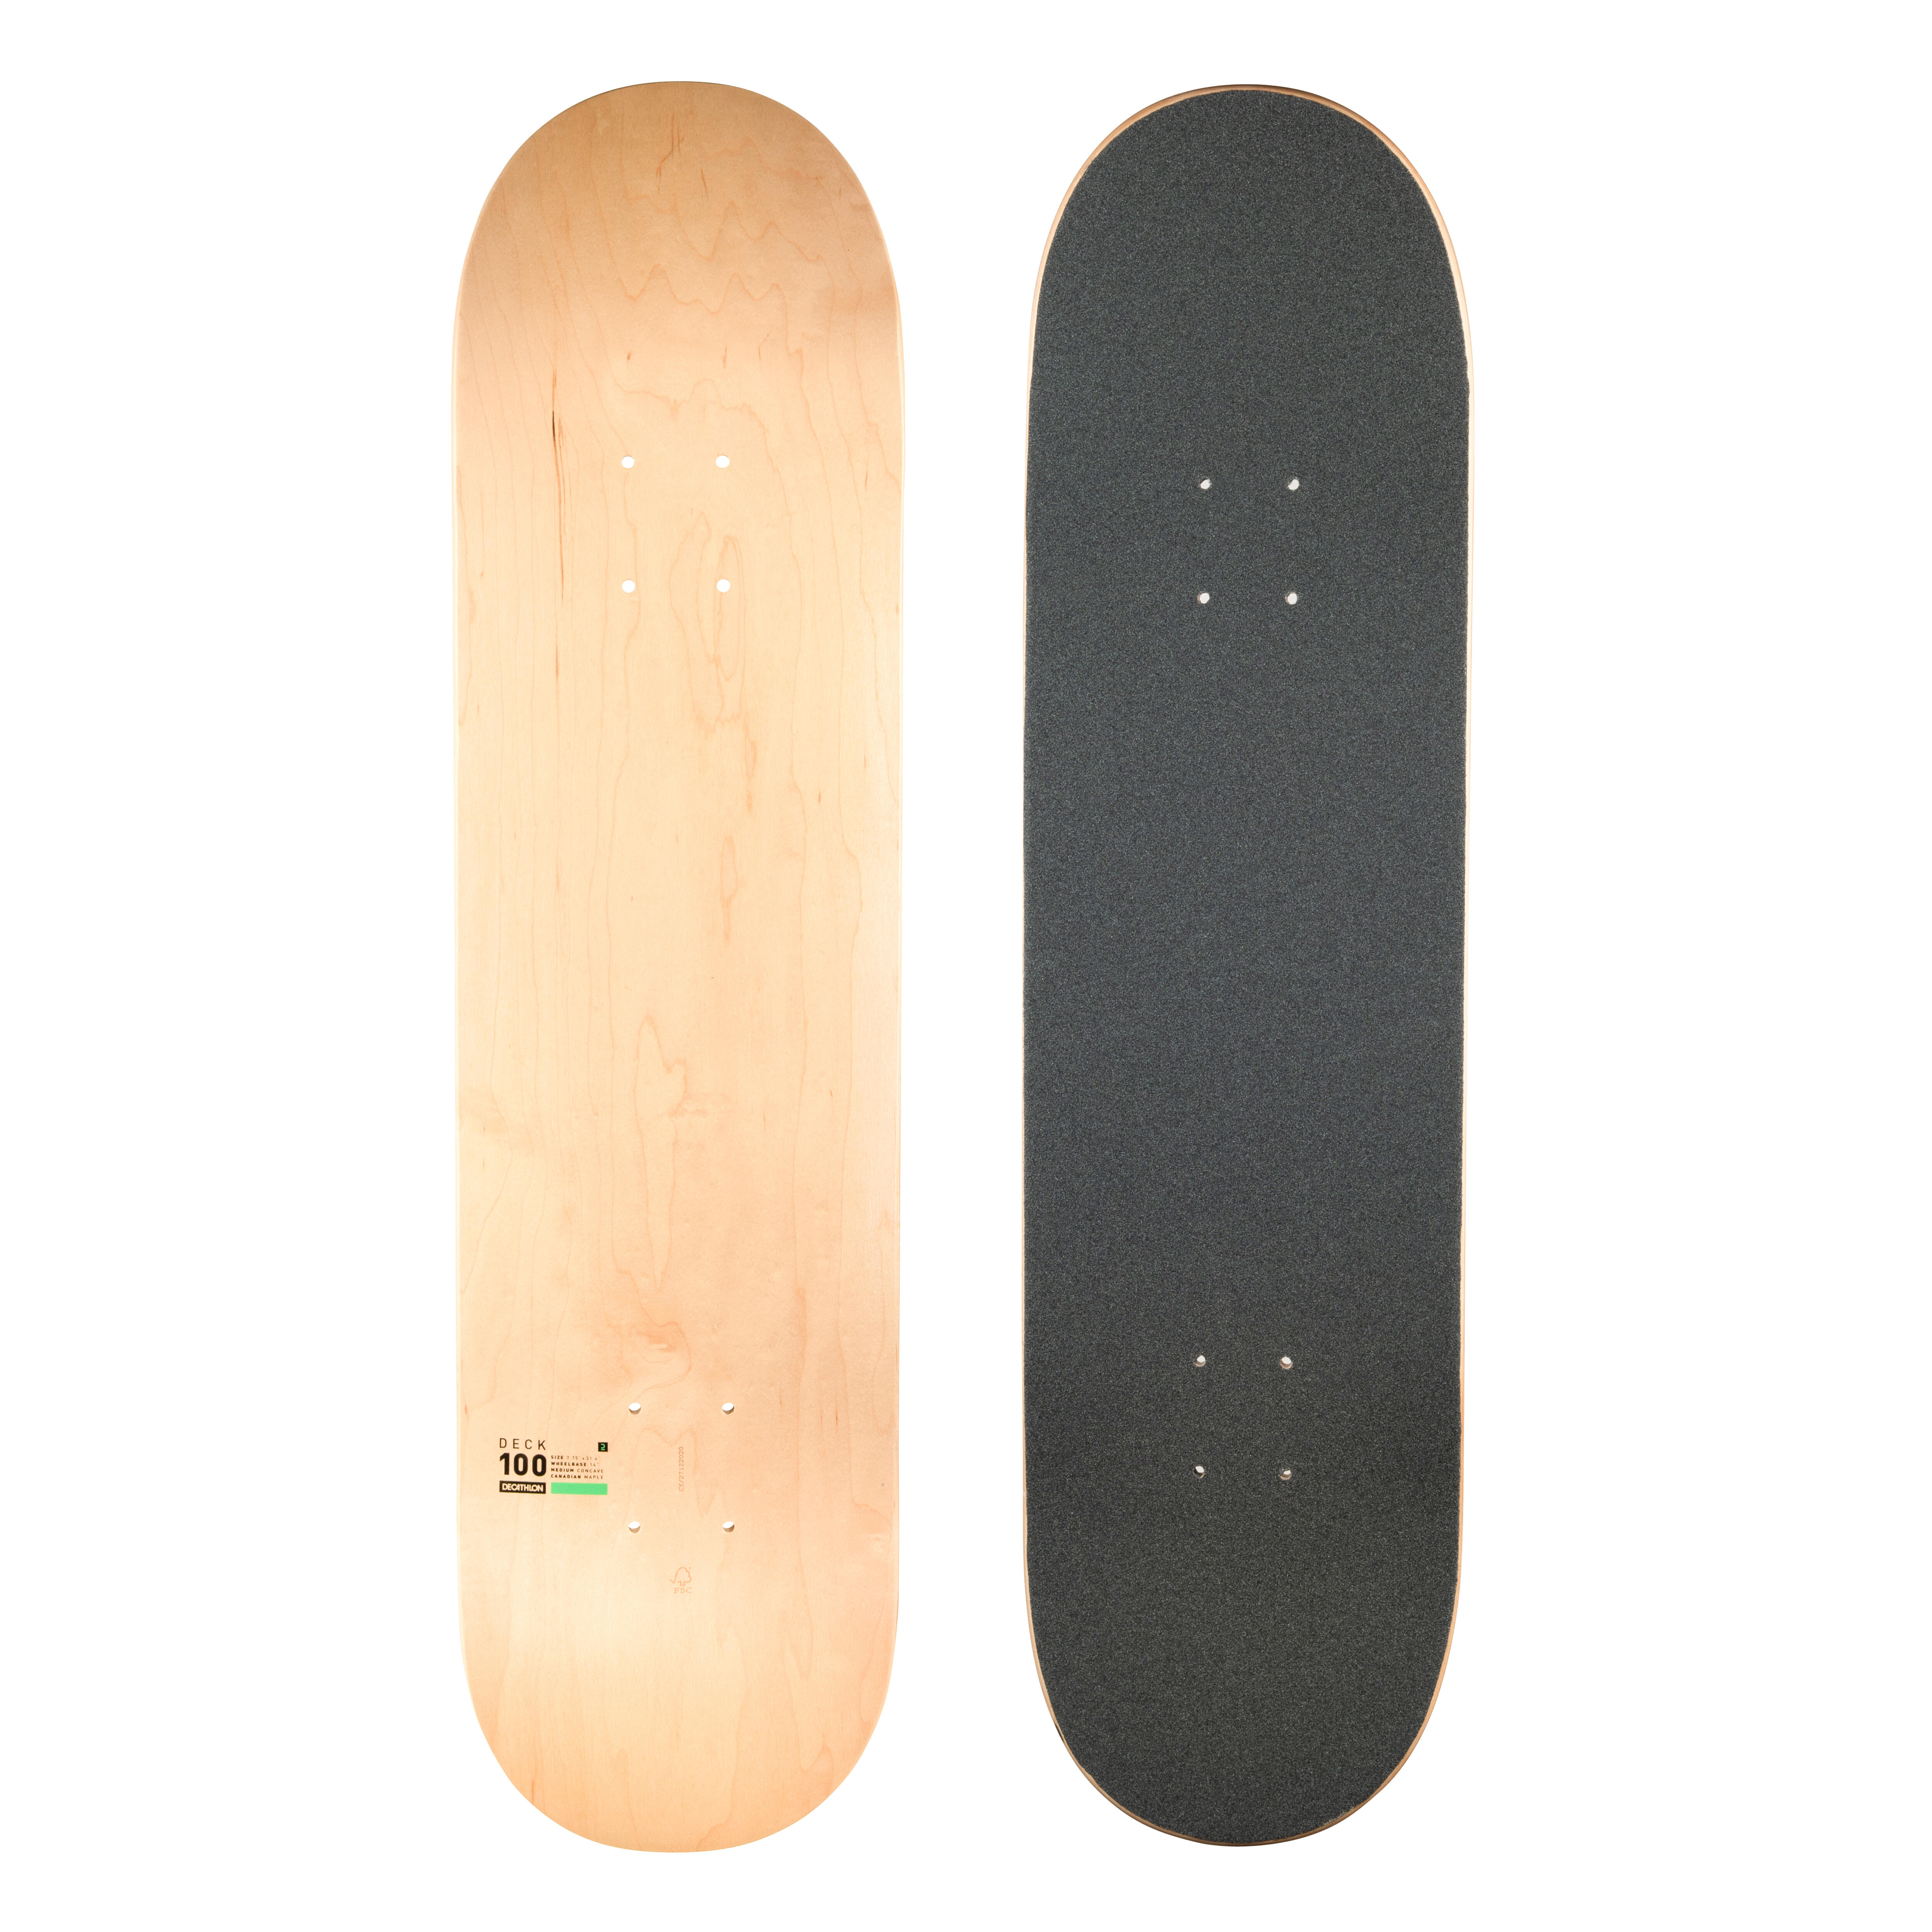 Placă Skateboard cu grip DK100 Mărimea 7.75″ 7.75"  Placi si piese de schimb skateboard